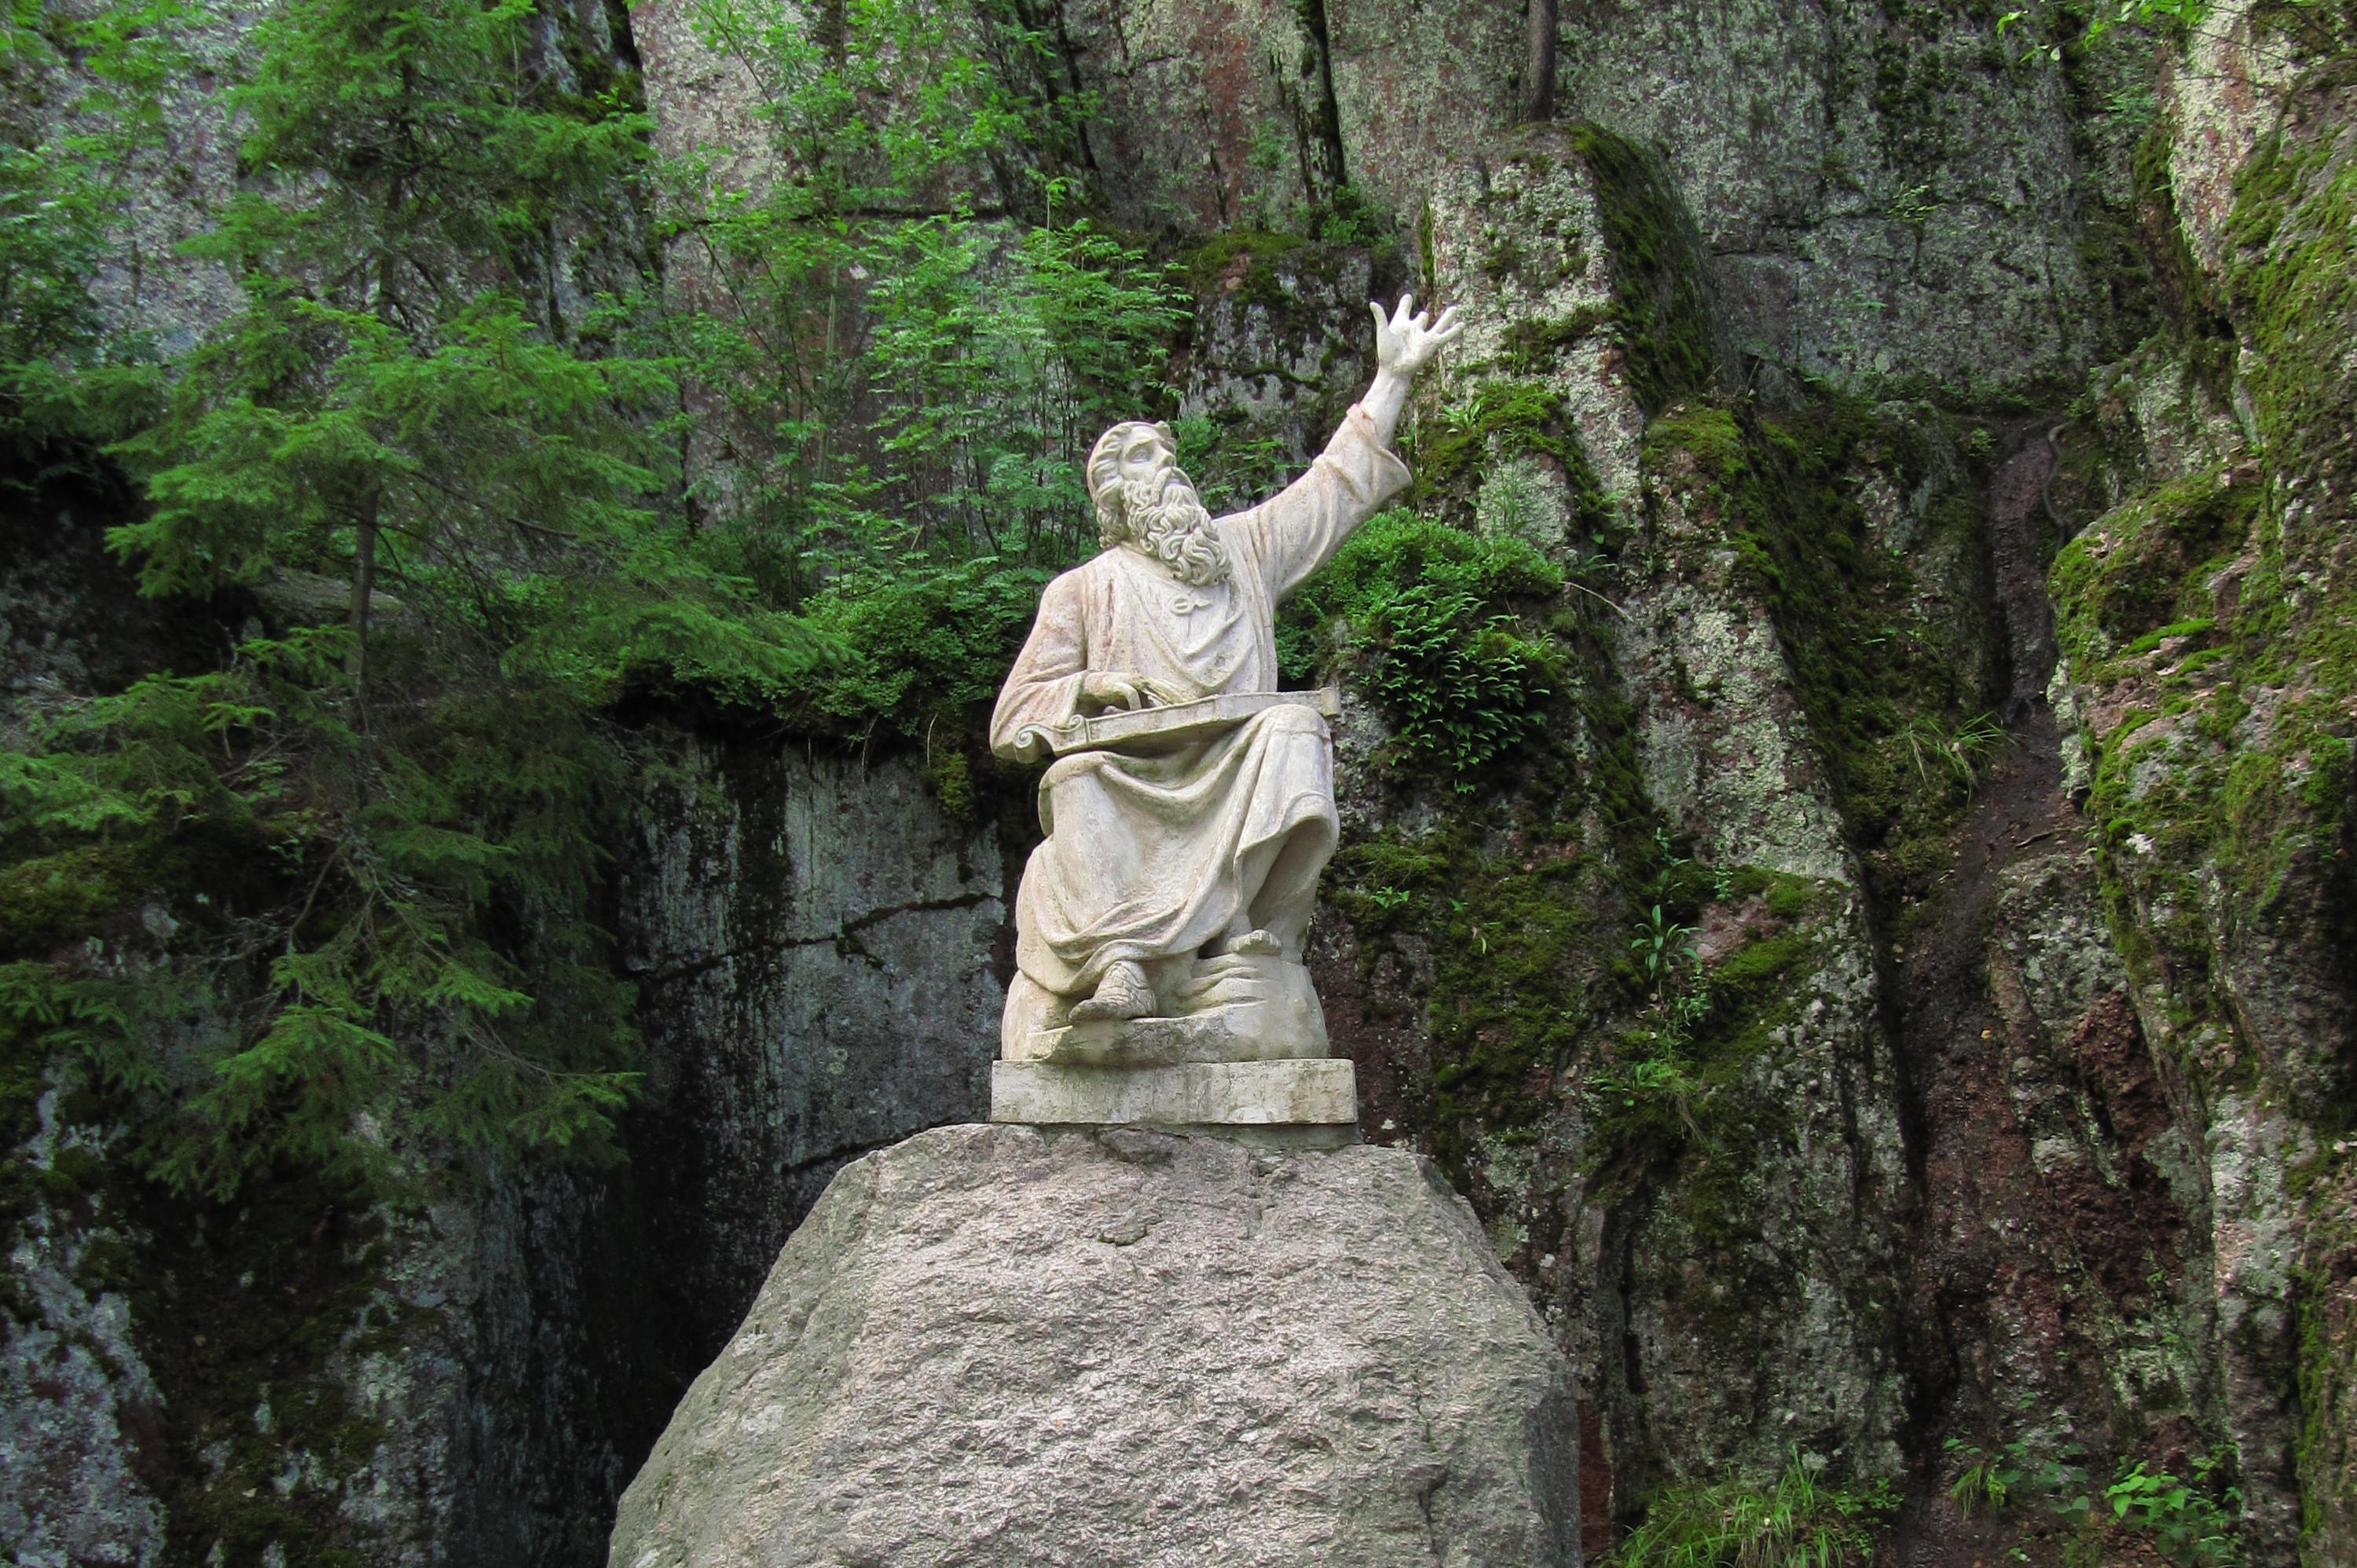 Väinämöisen patsas kiven päällä Kuva: L30rus (CC BY-SA 3.0)